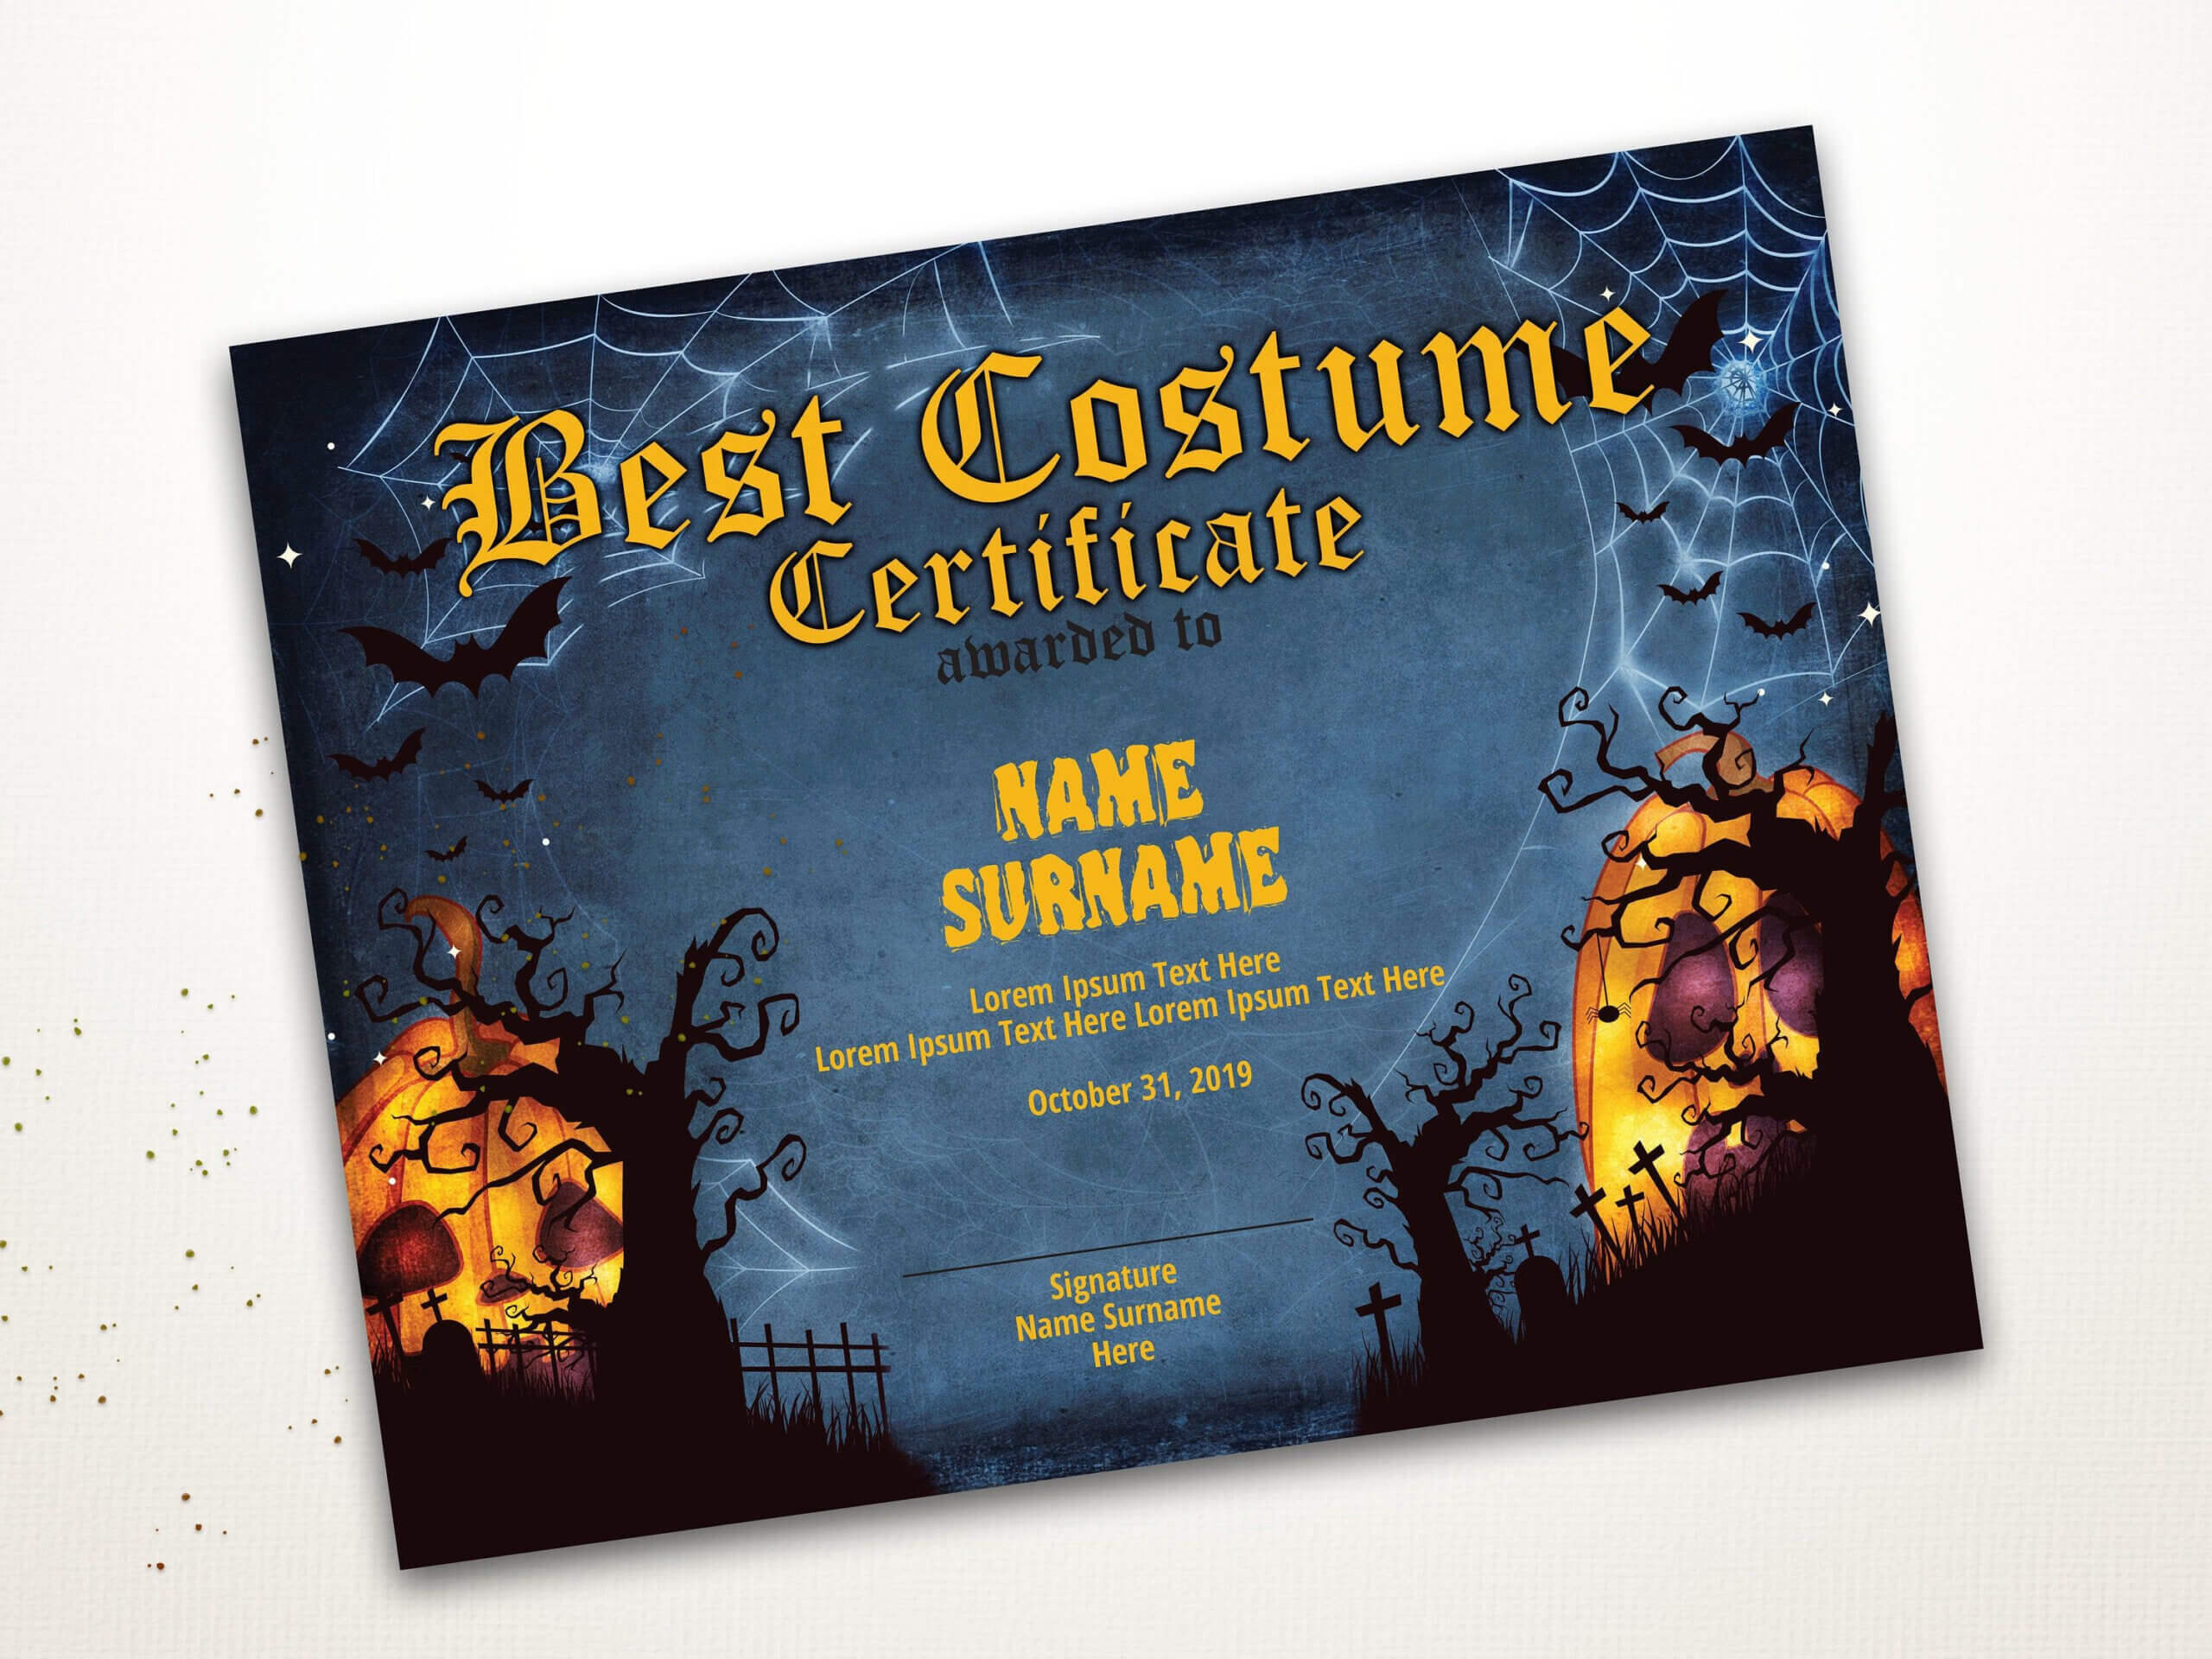 Halloween Best Costume Certificate Editable Template Costume For Halloween Costume Certificate Template